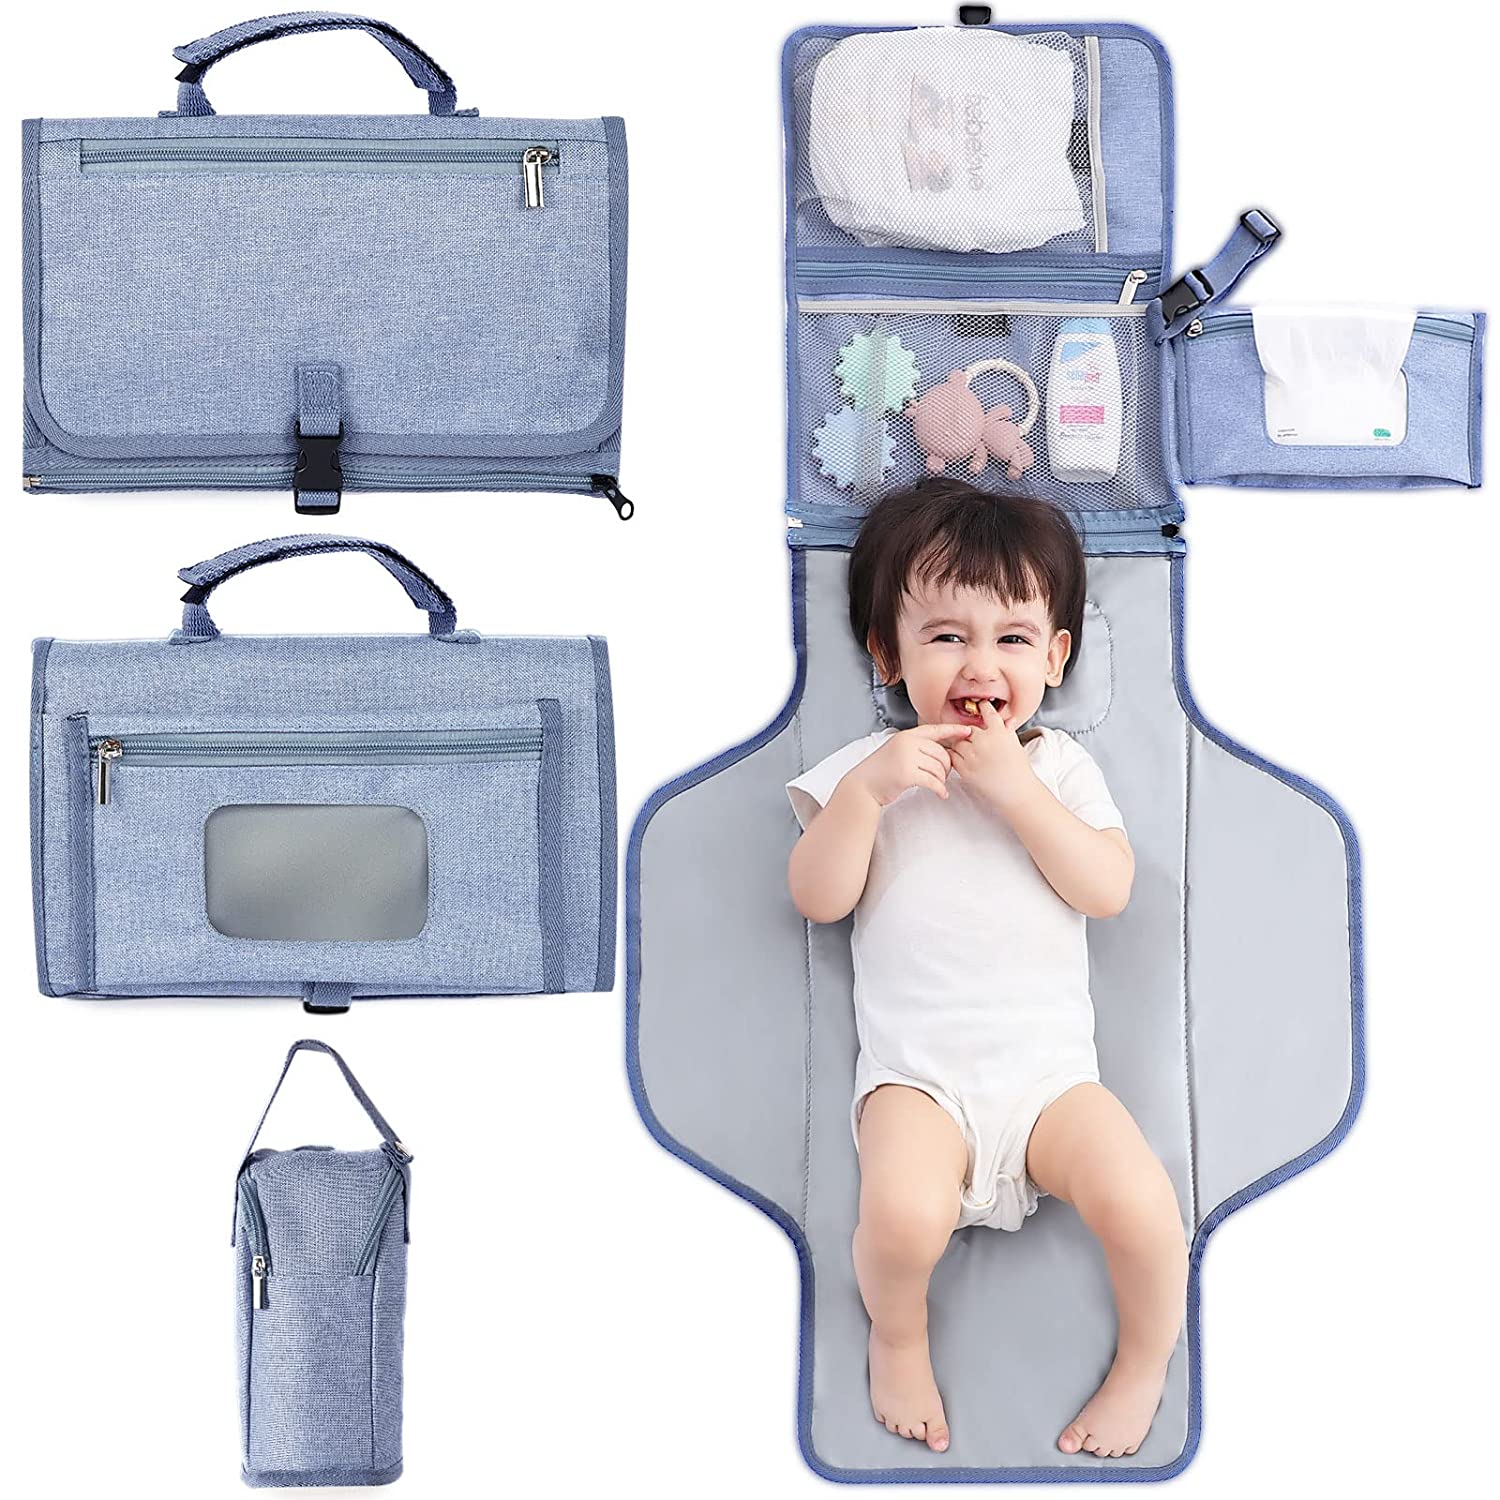 Almofada portátil para troca de fraldas, almofada removível para troca de viagem com bolsa térmica para garrafa de bebê, almofada para troca de bebê com reversível